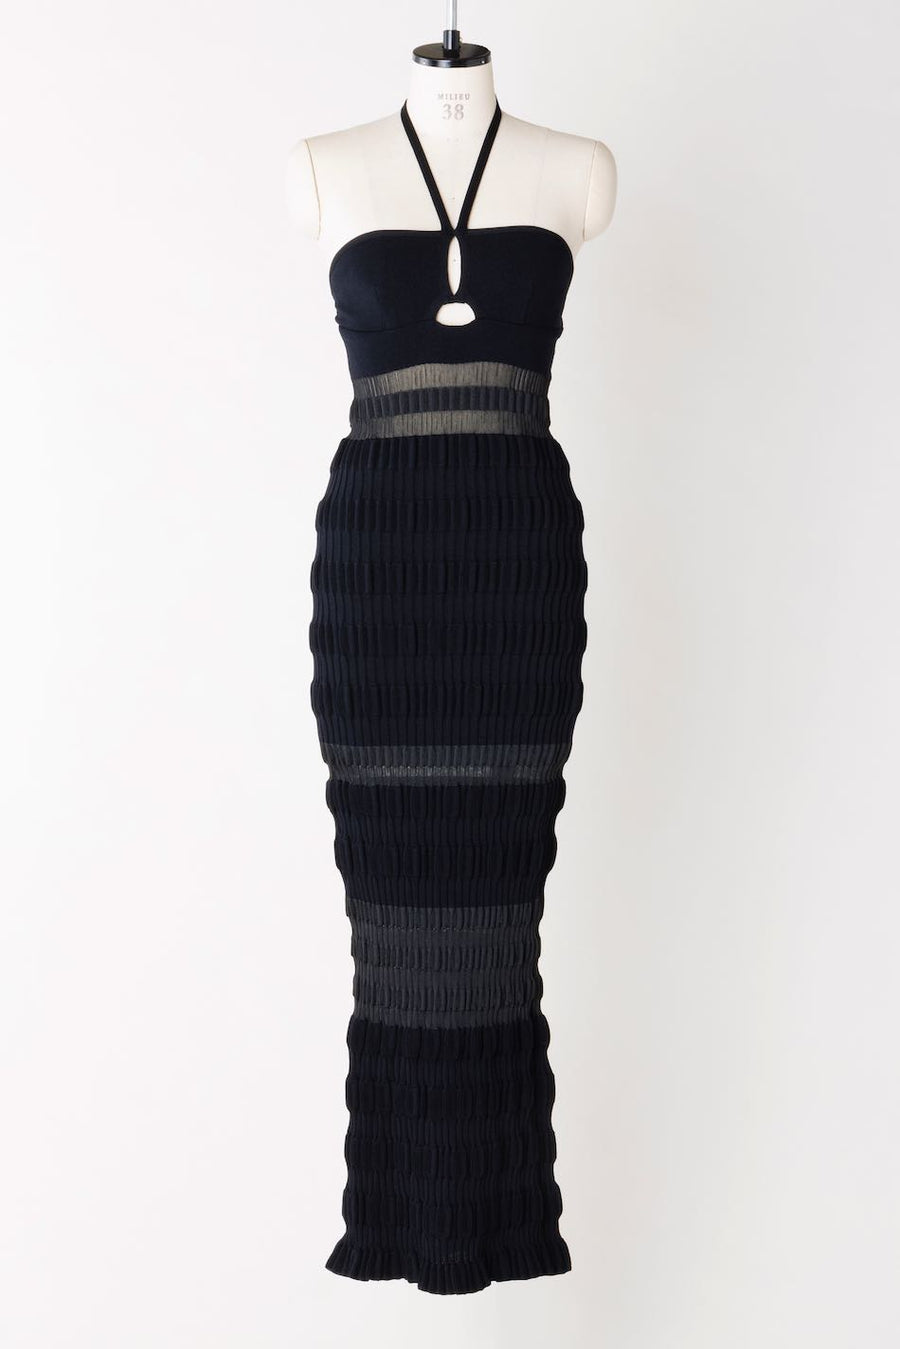 FETICO's Stripe Knit Dress (Knit Dress) Mail Order | Palette Art